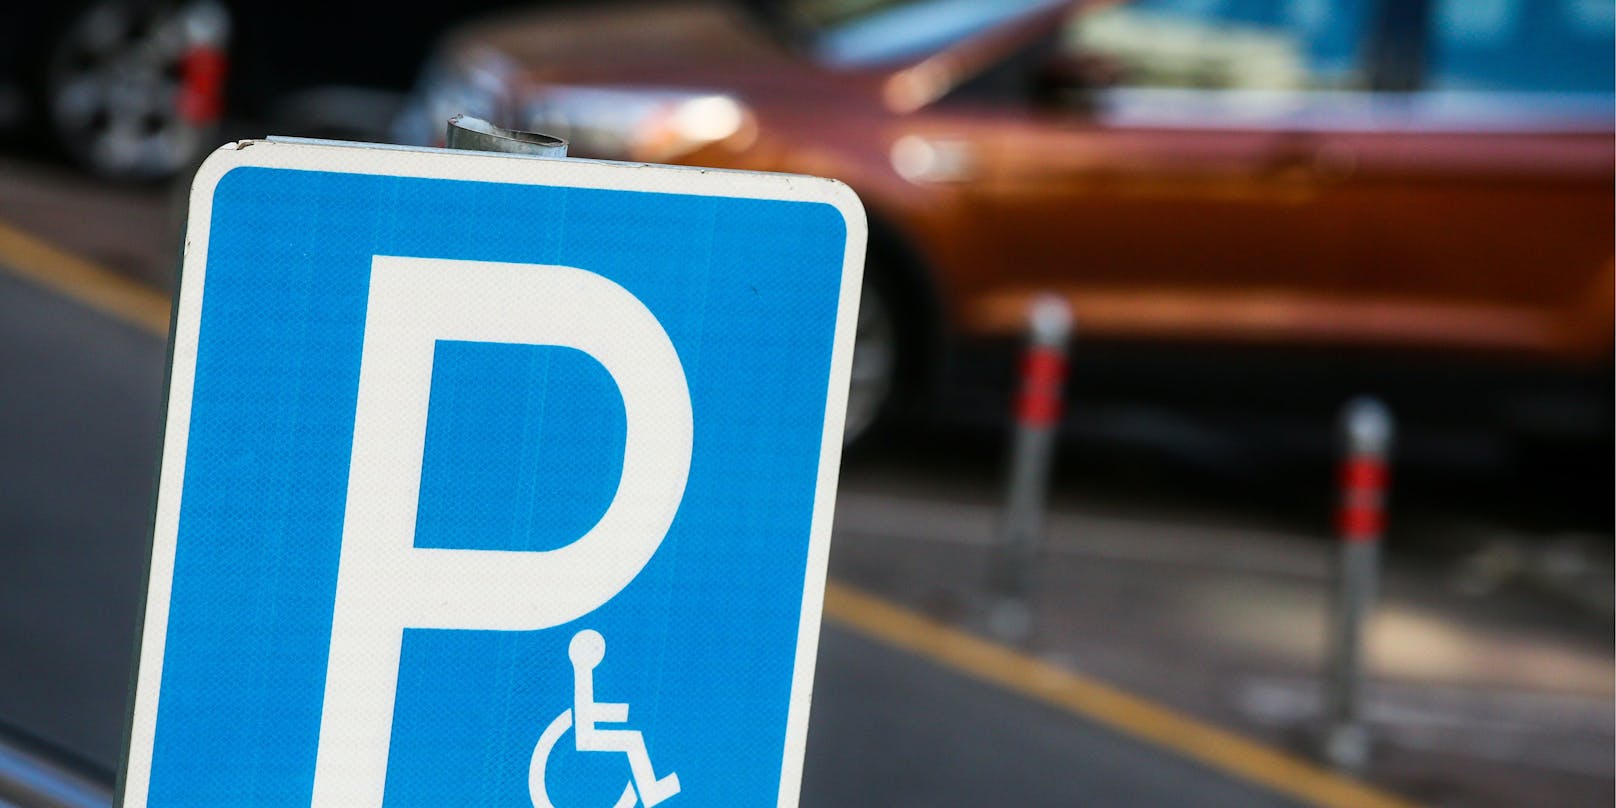 Wer in Österreich rechtswidrig auf einem Behindertenparkplatz parkt, muss mit Strafen von bis zu 726 Euro rechnen. (Symbolbild)